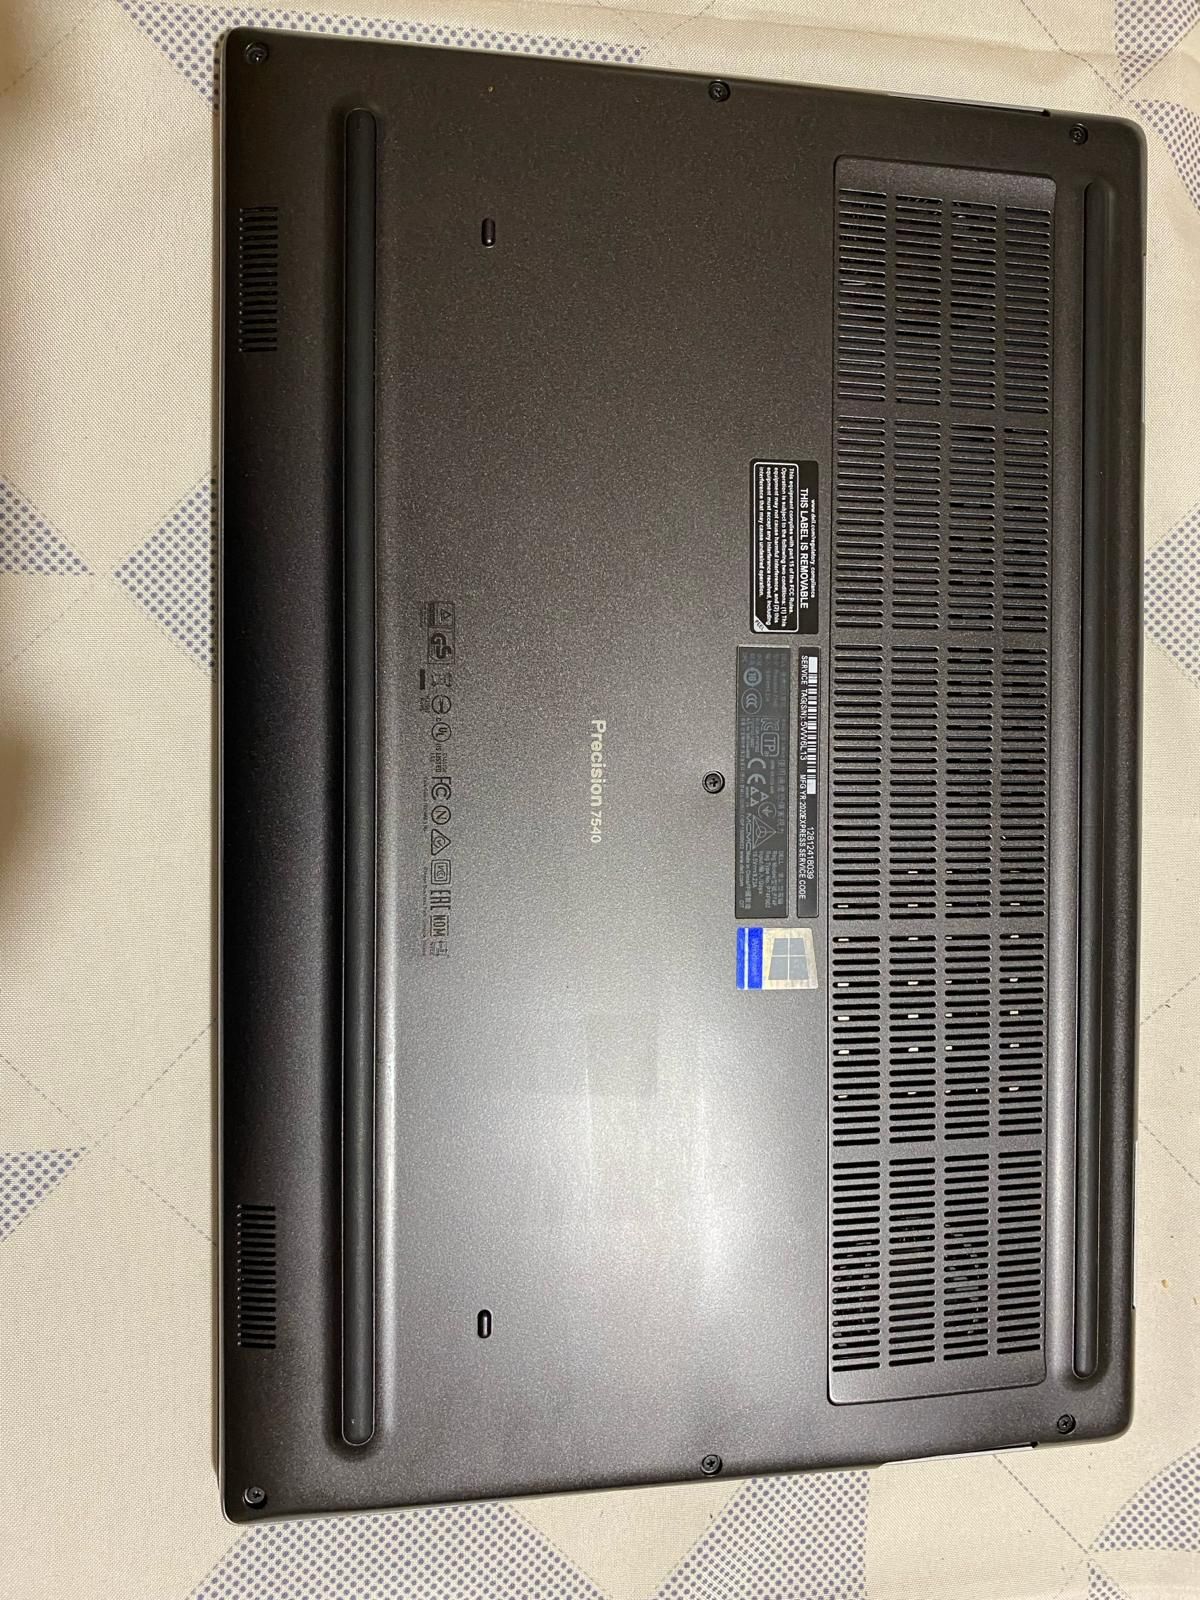 Laptop Dell Precision 7540